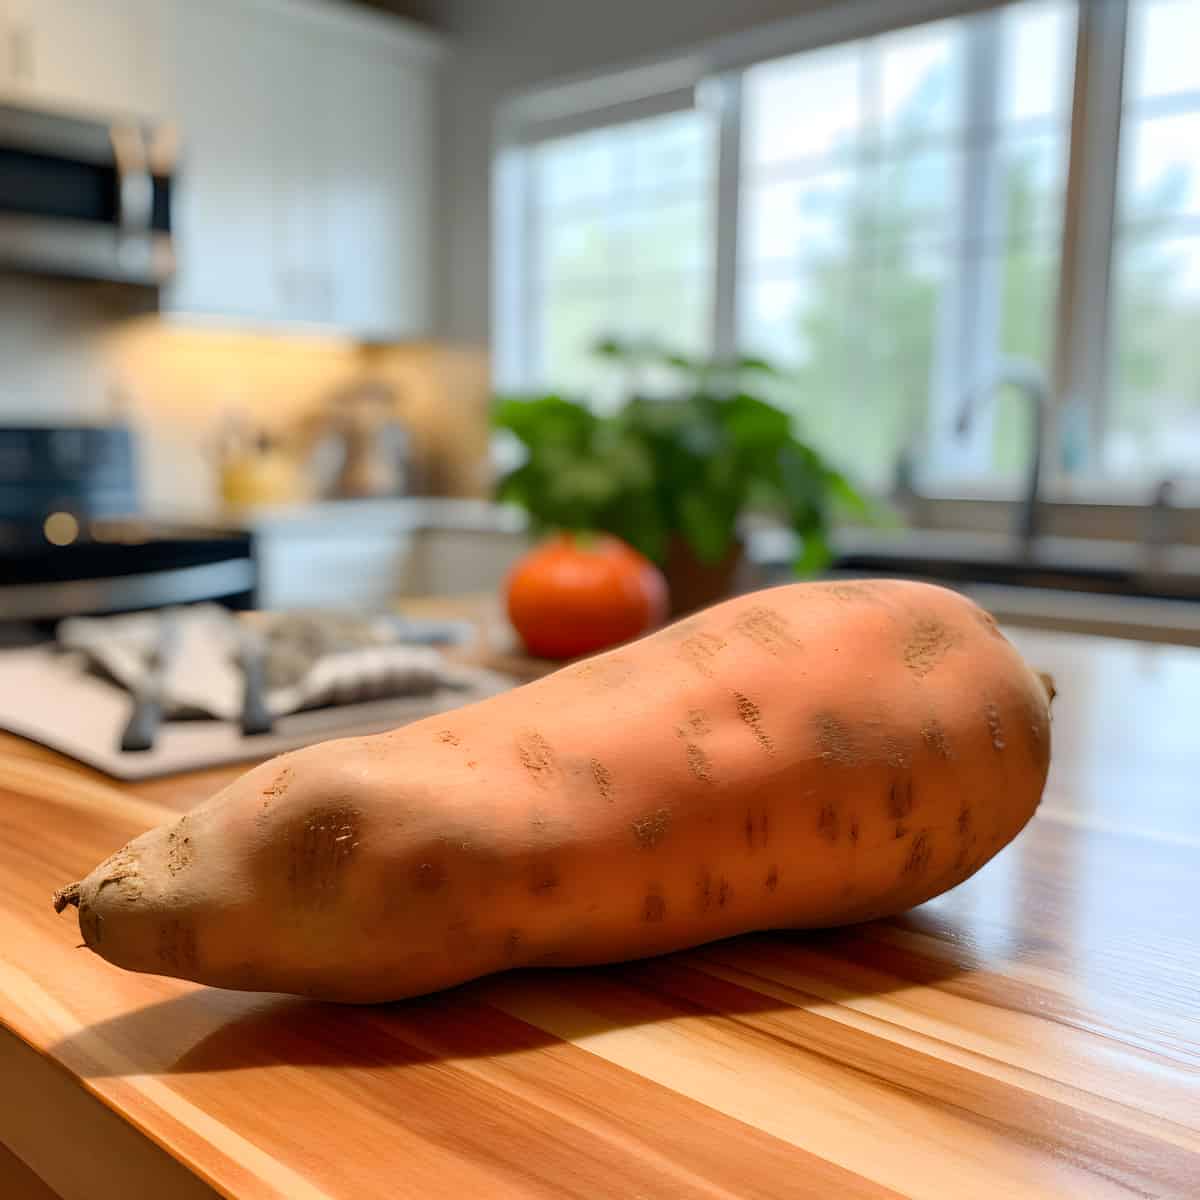 Centennial Sweet Potatoes on a kitchen counter